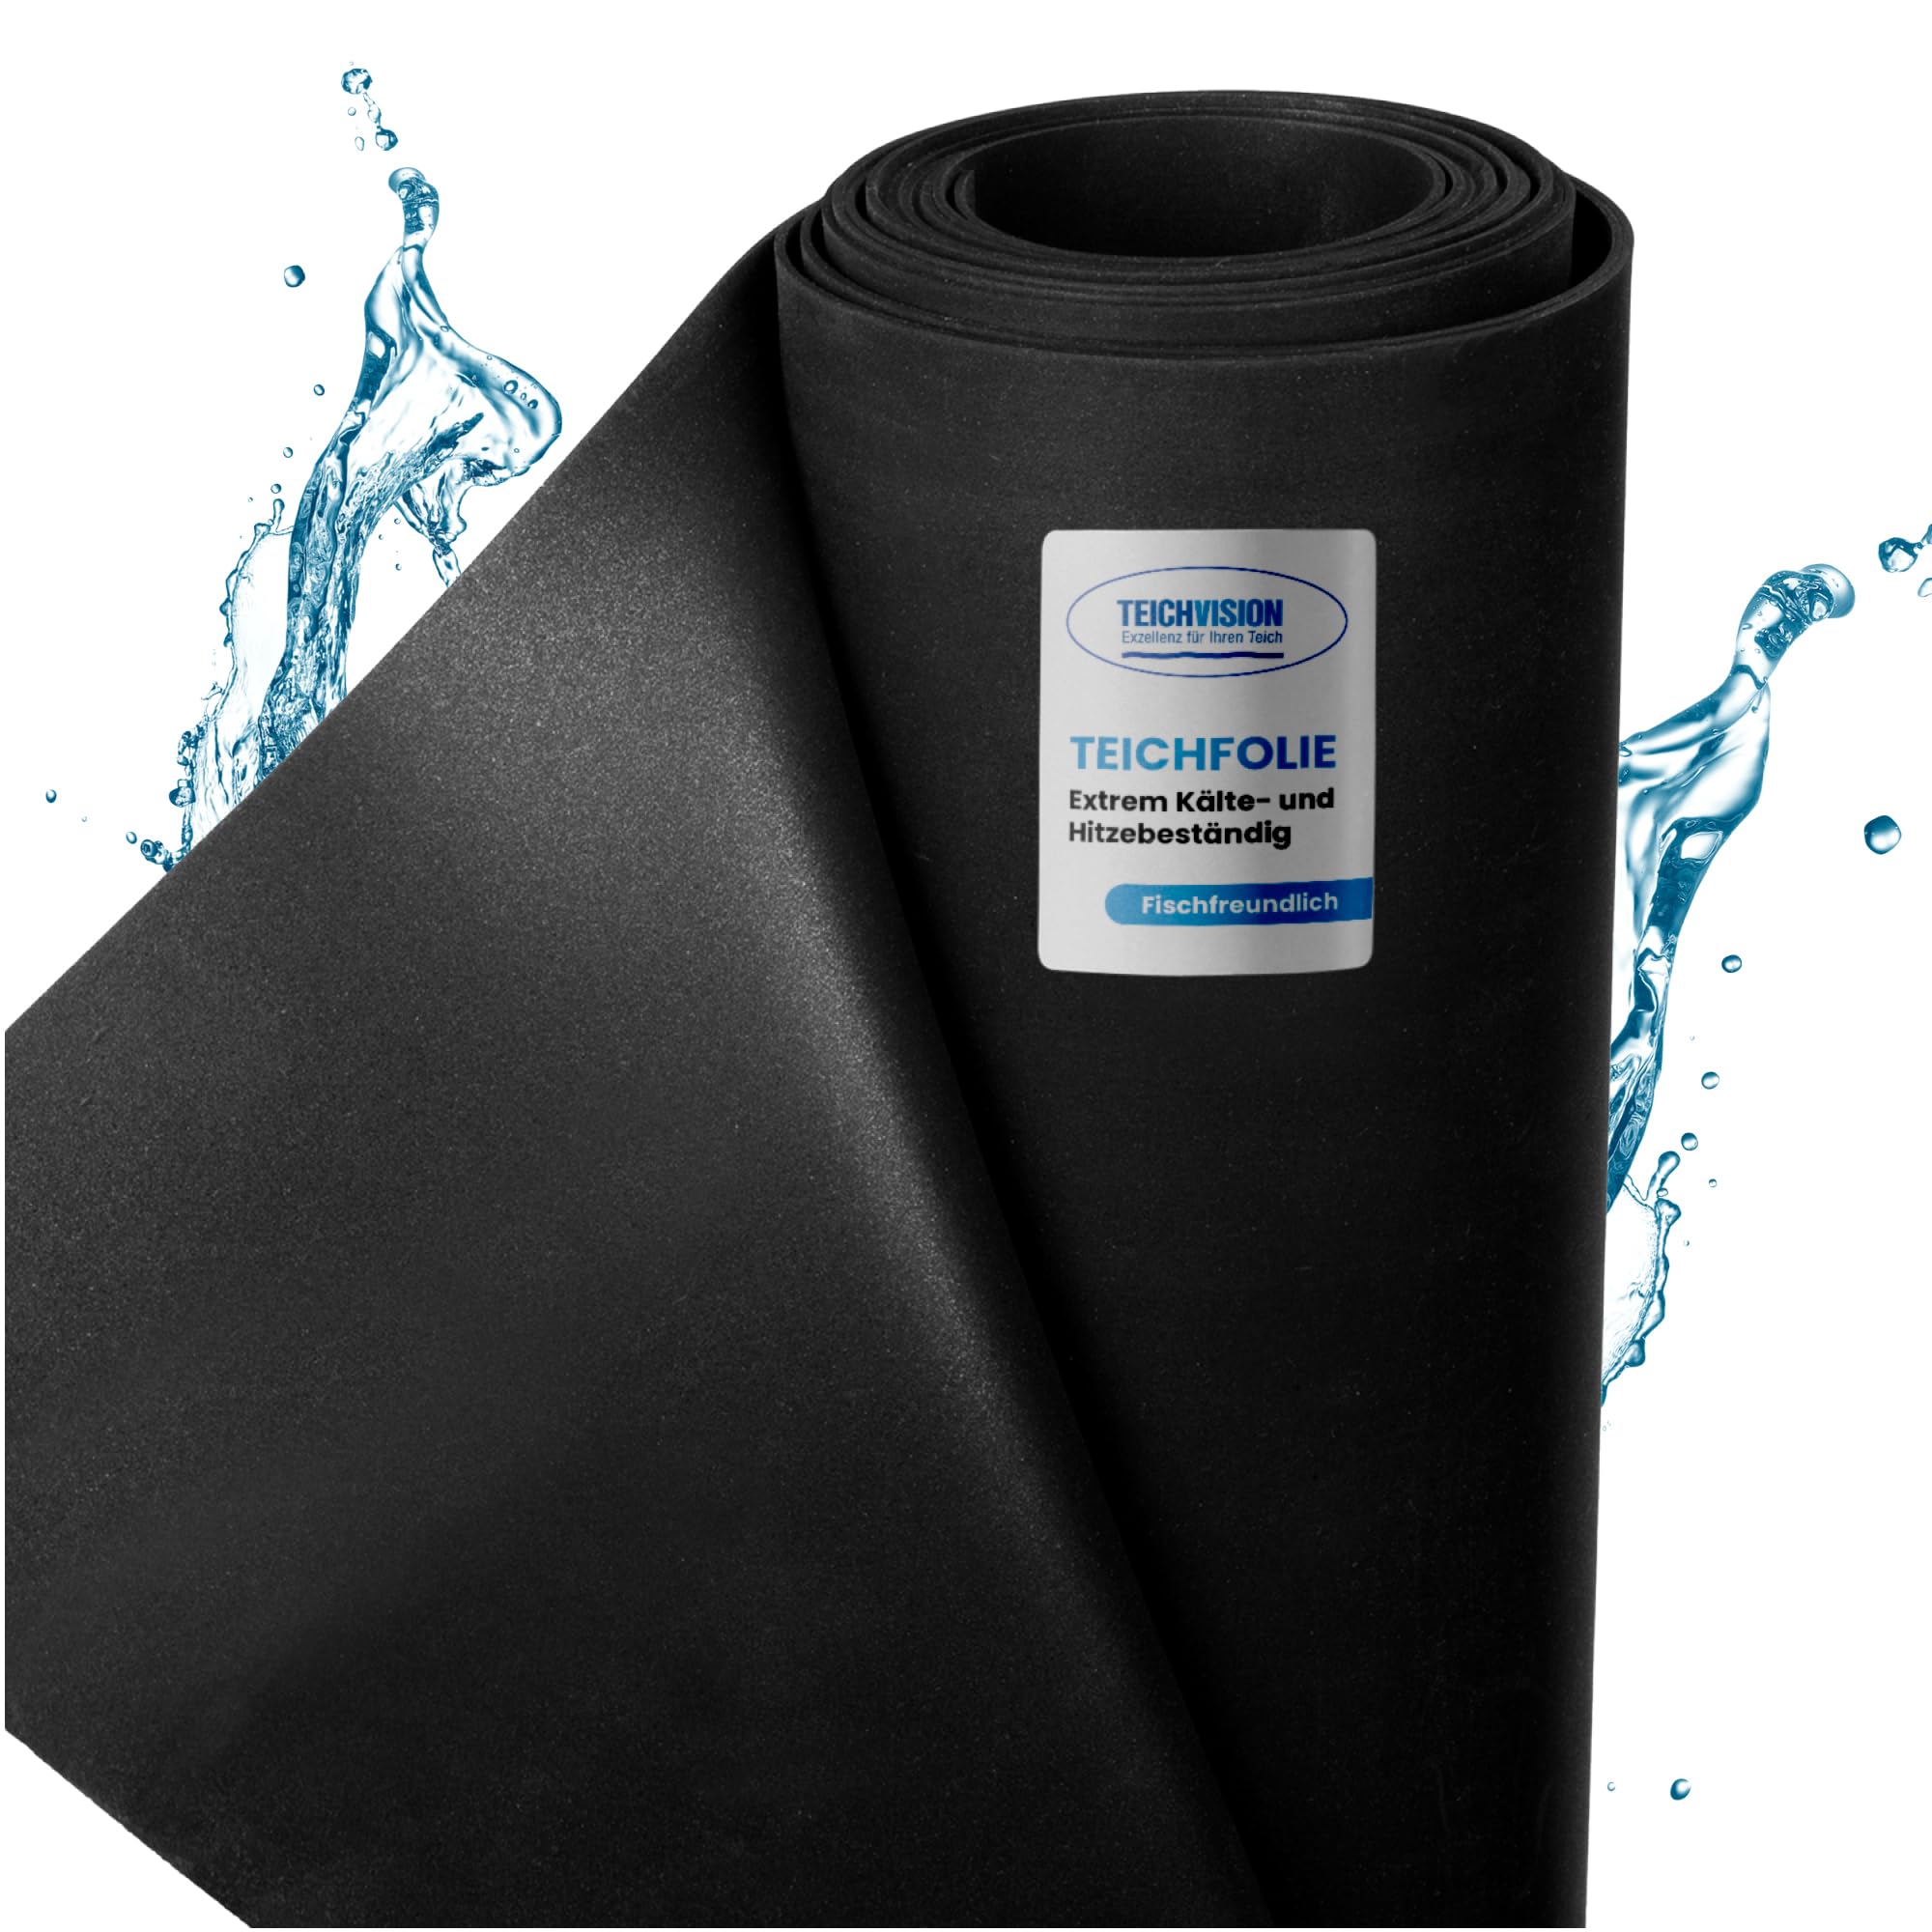 TeichVision - Premium EPDM Teichfolie Stärke 1 mm - 3,05 m x 13 m/naturgerechte EPDM Folie schwarz - besonders langlebig/auch geeignet als Hochbeet Folie wasserdicht